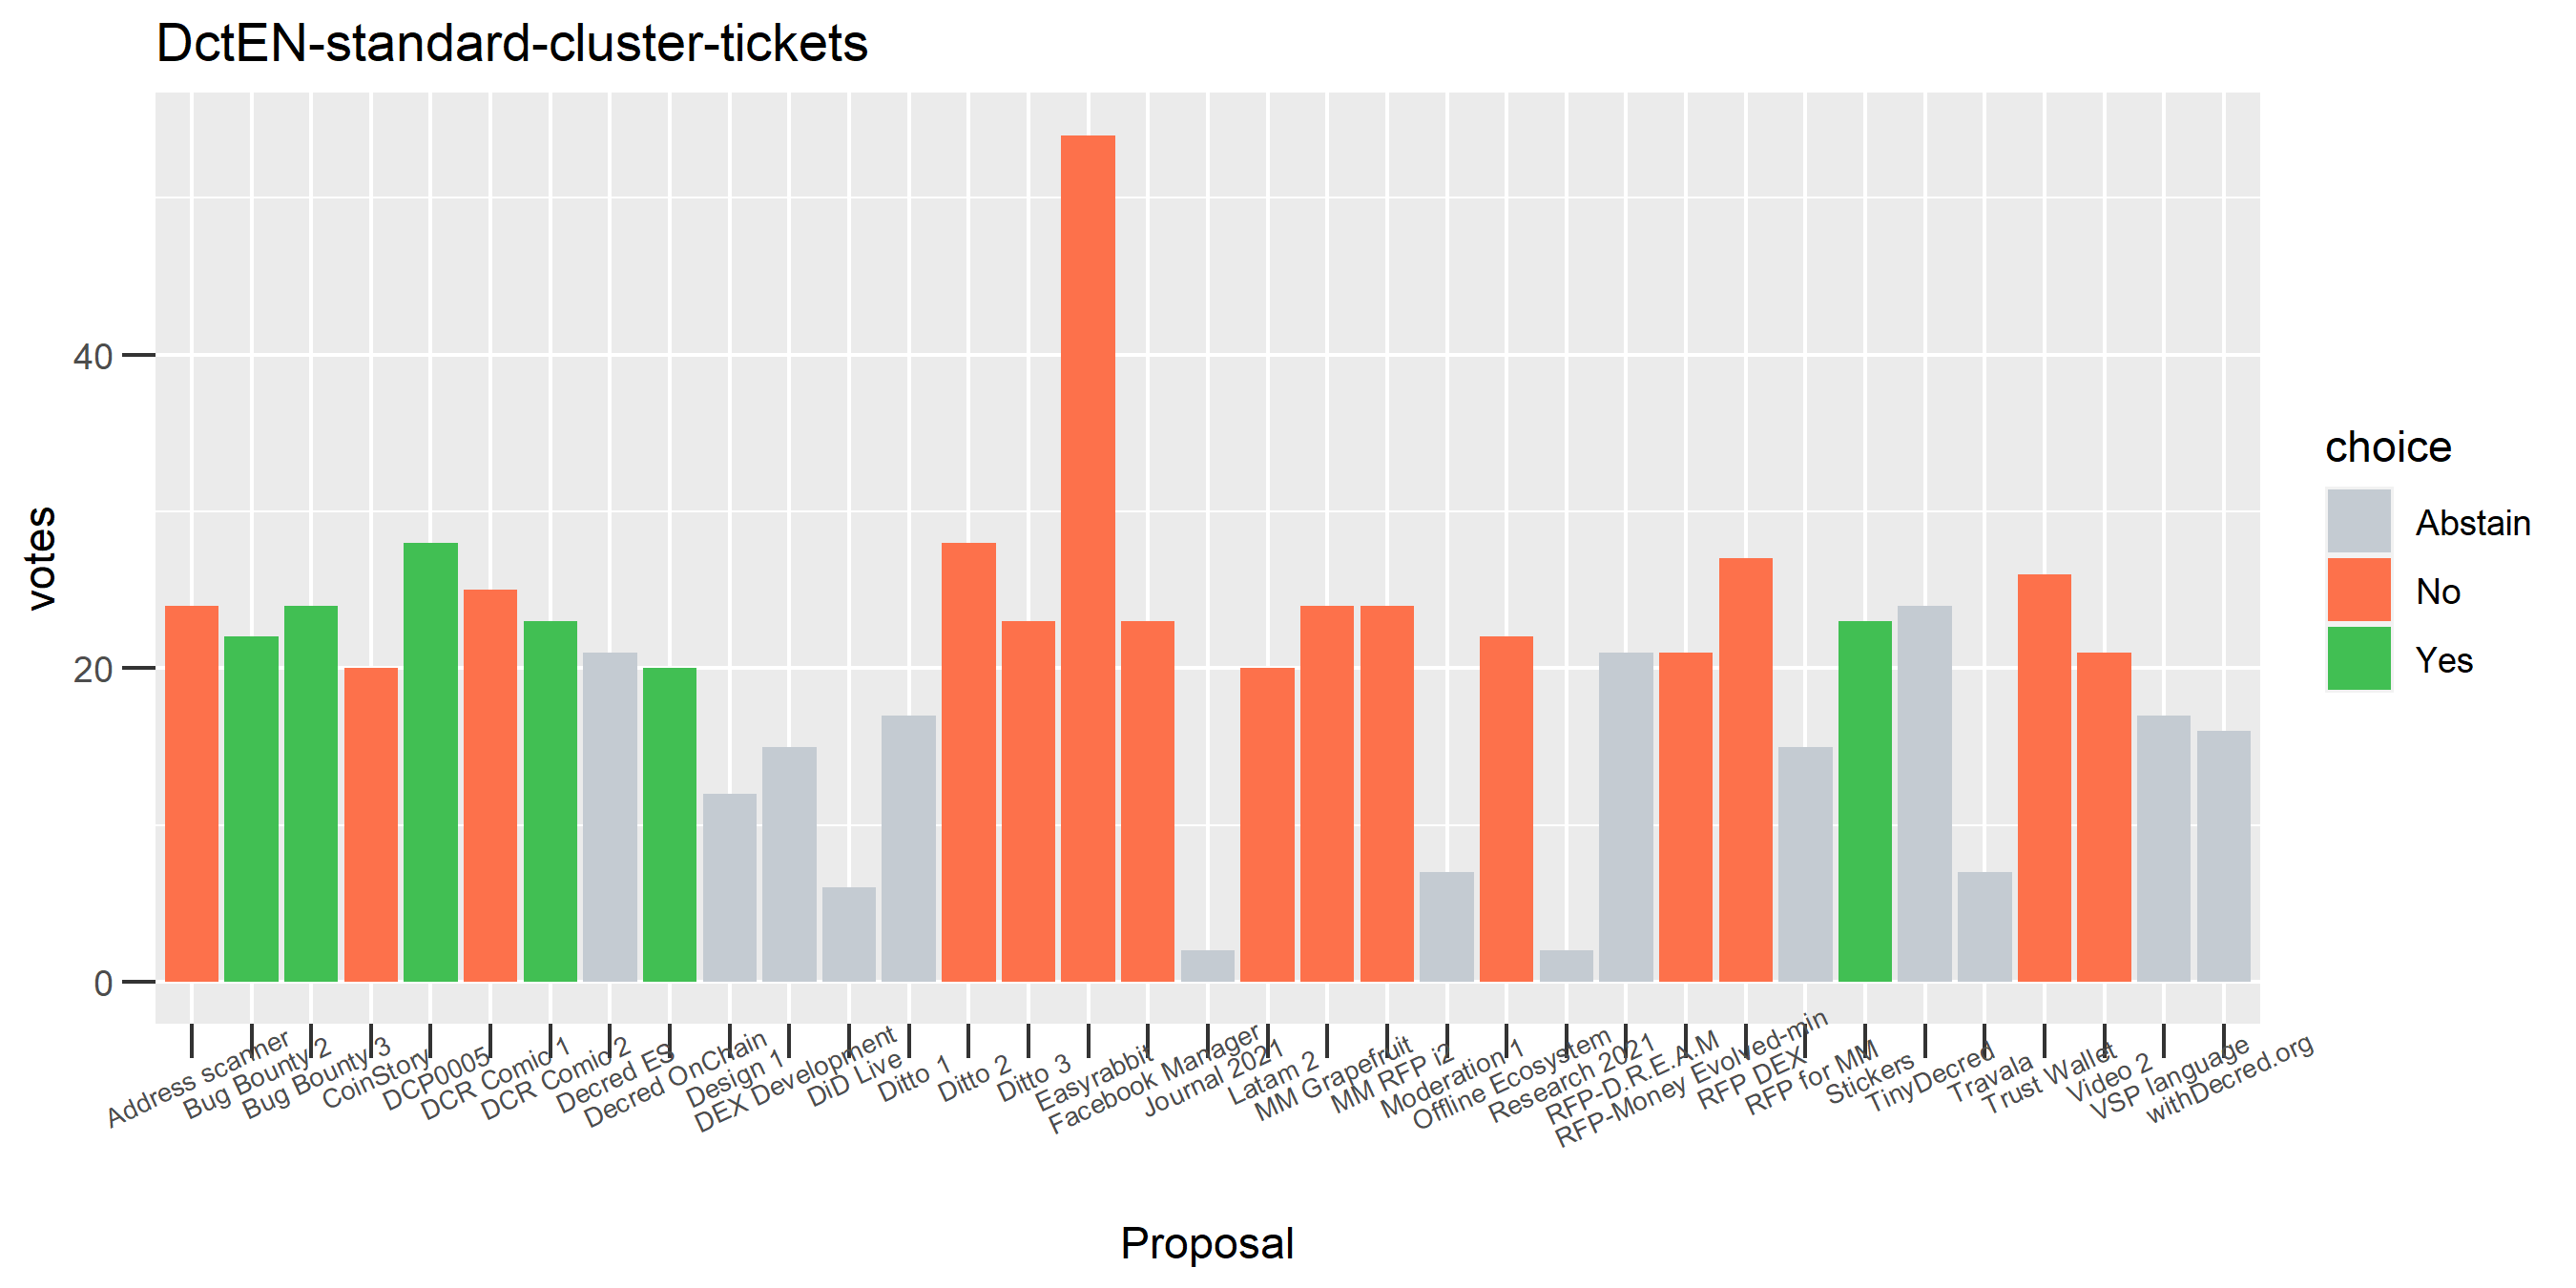 DctEN-standard-cluster-tickets